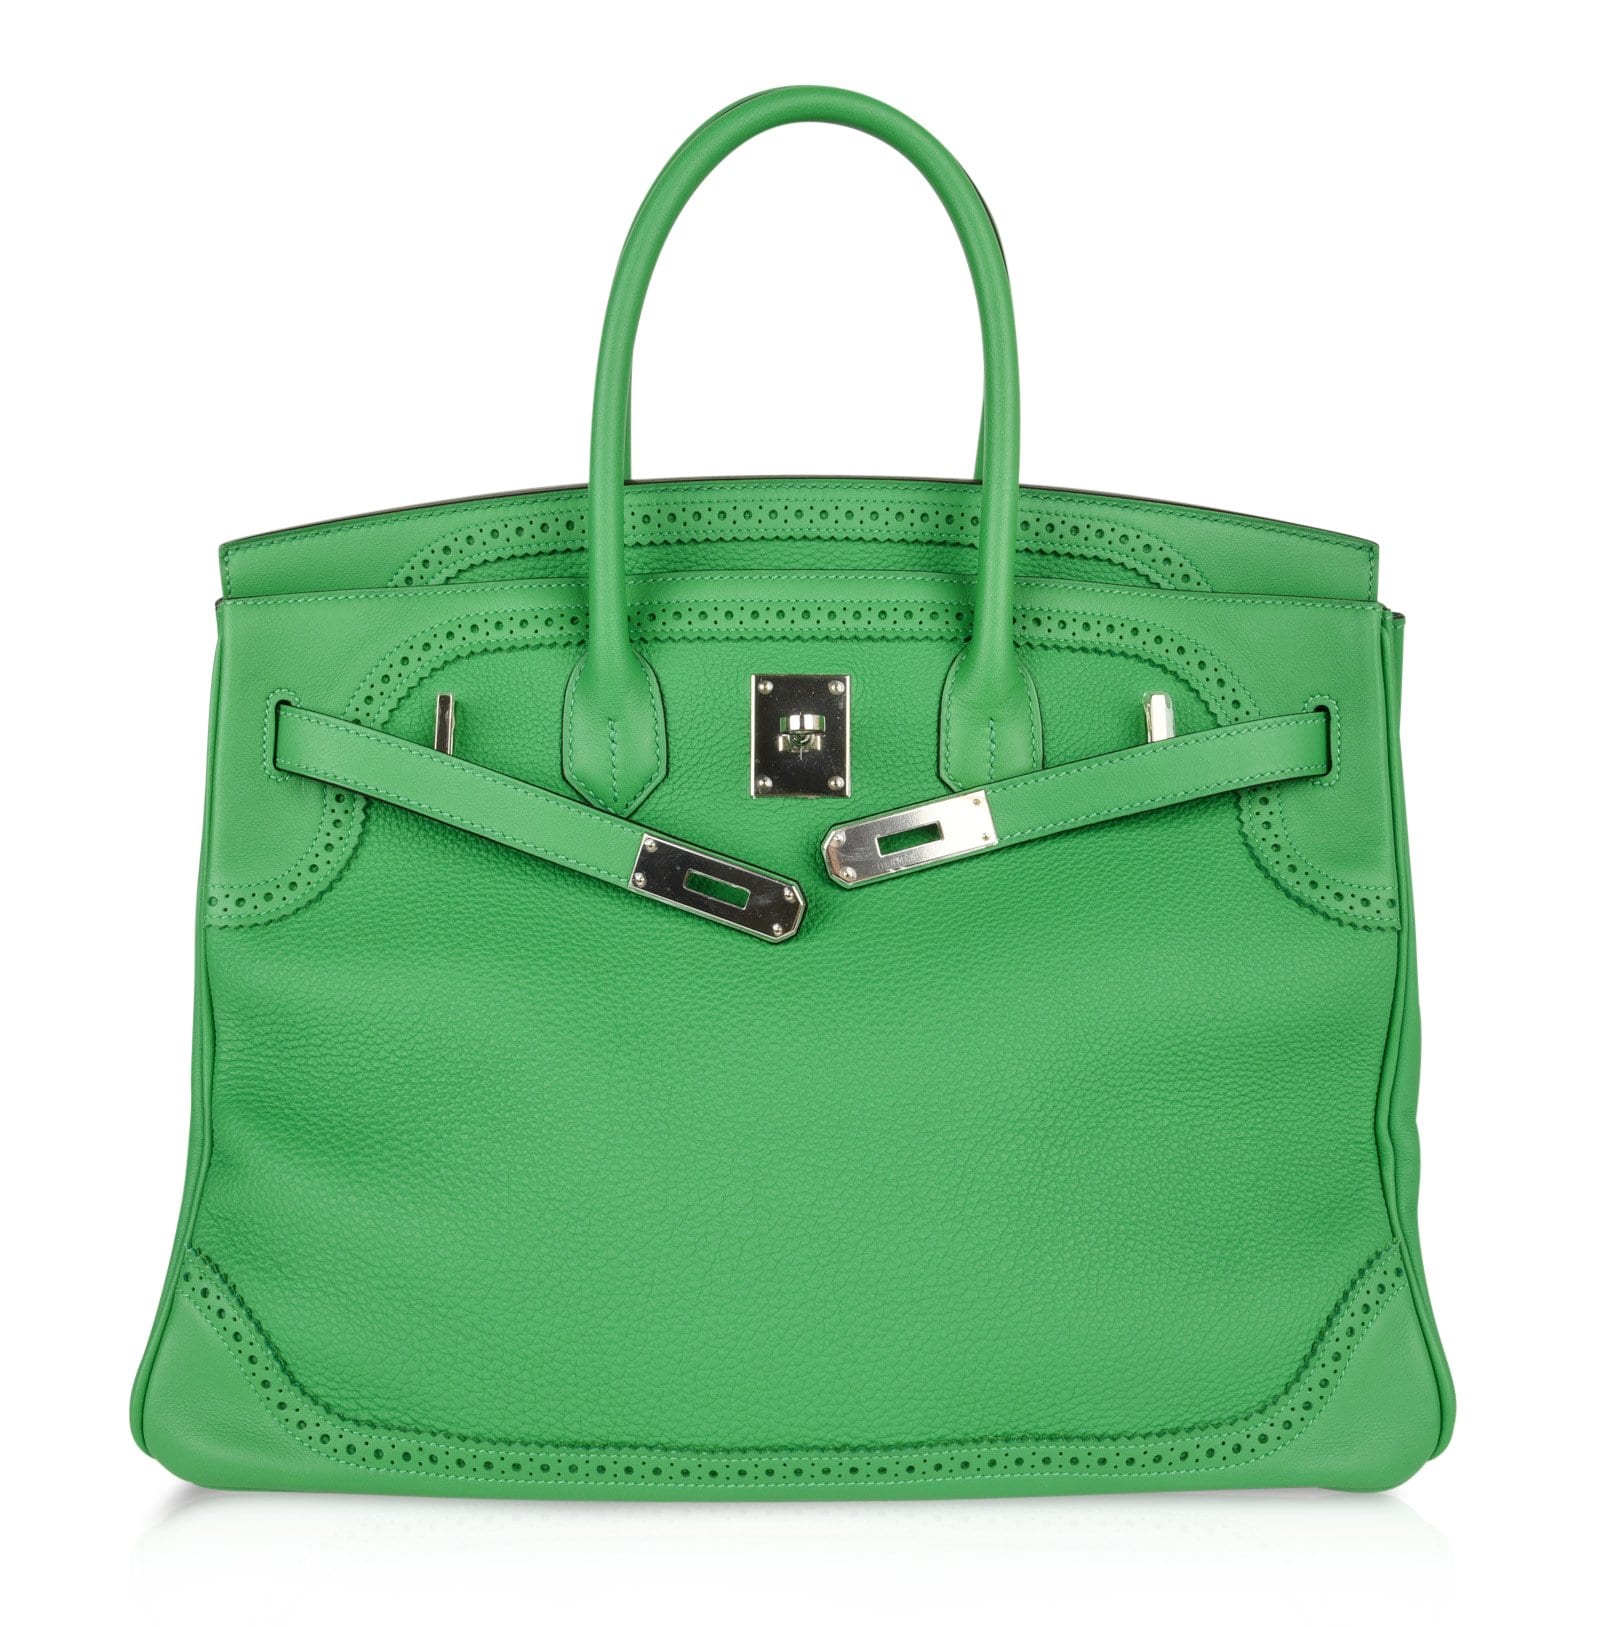 New Color Hermes Birkin Bag 35CM BAMBOU GREEN GOLD HARDWARE